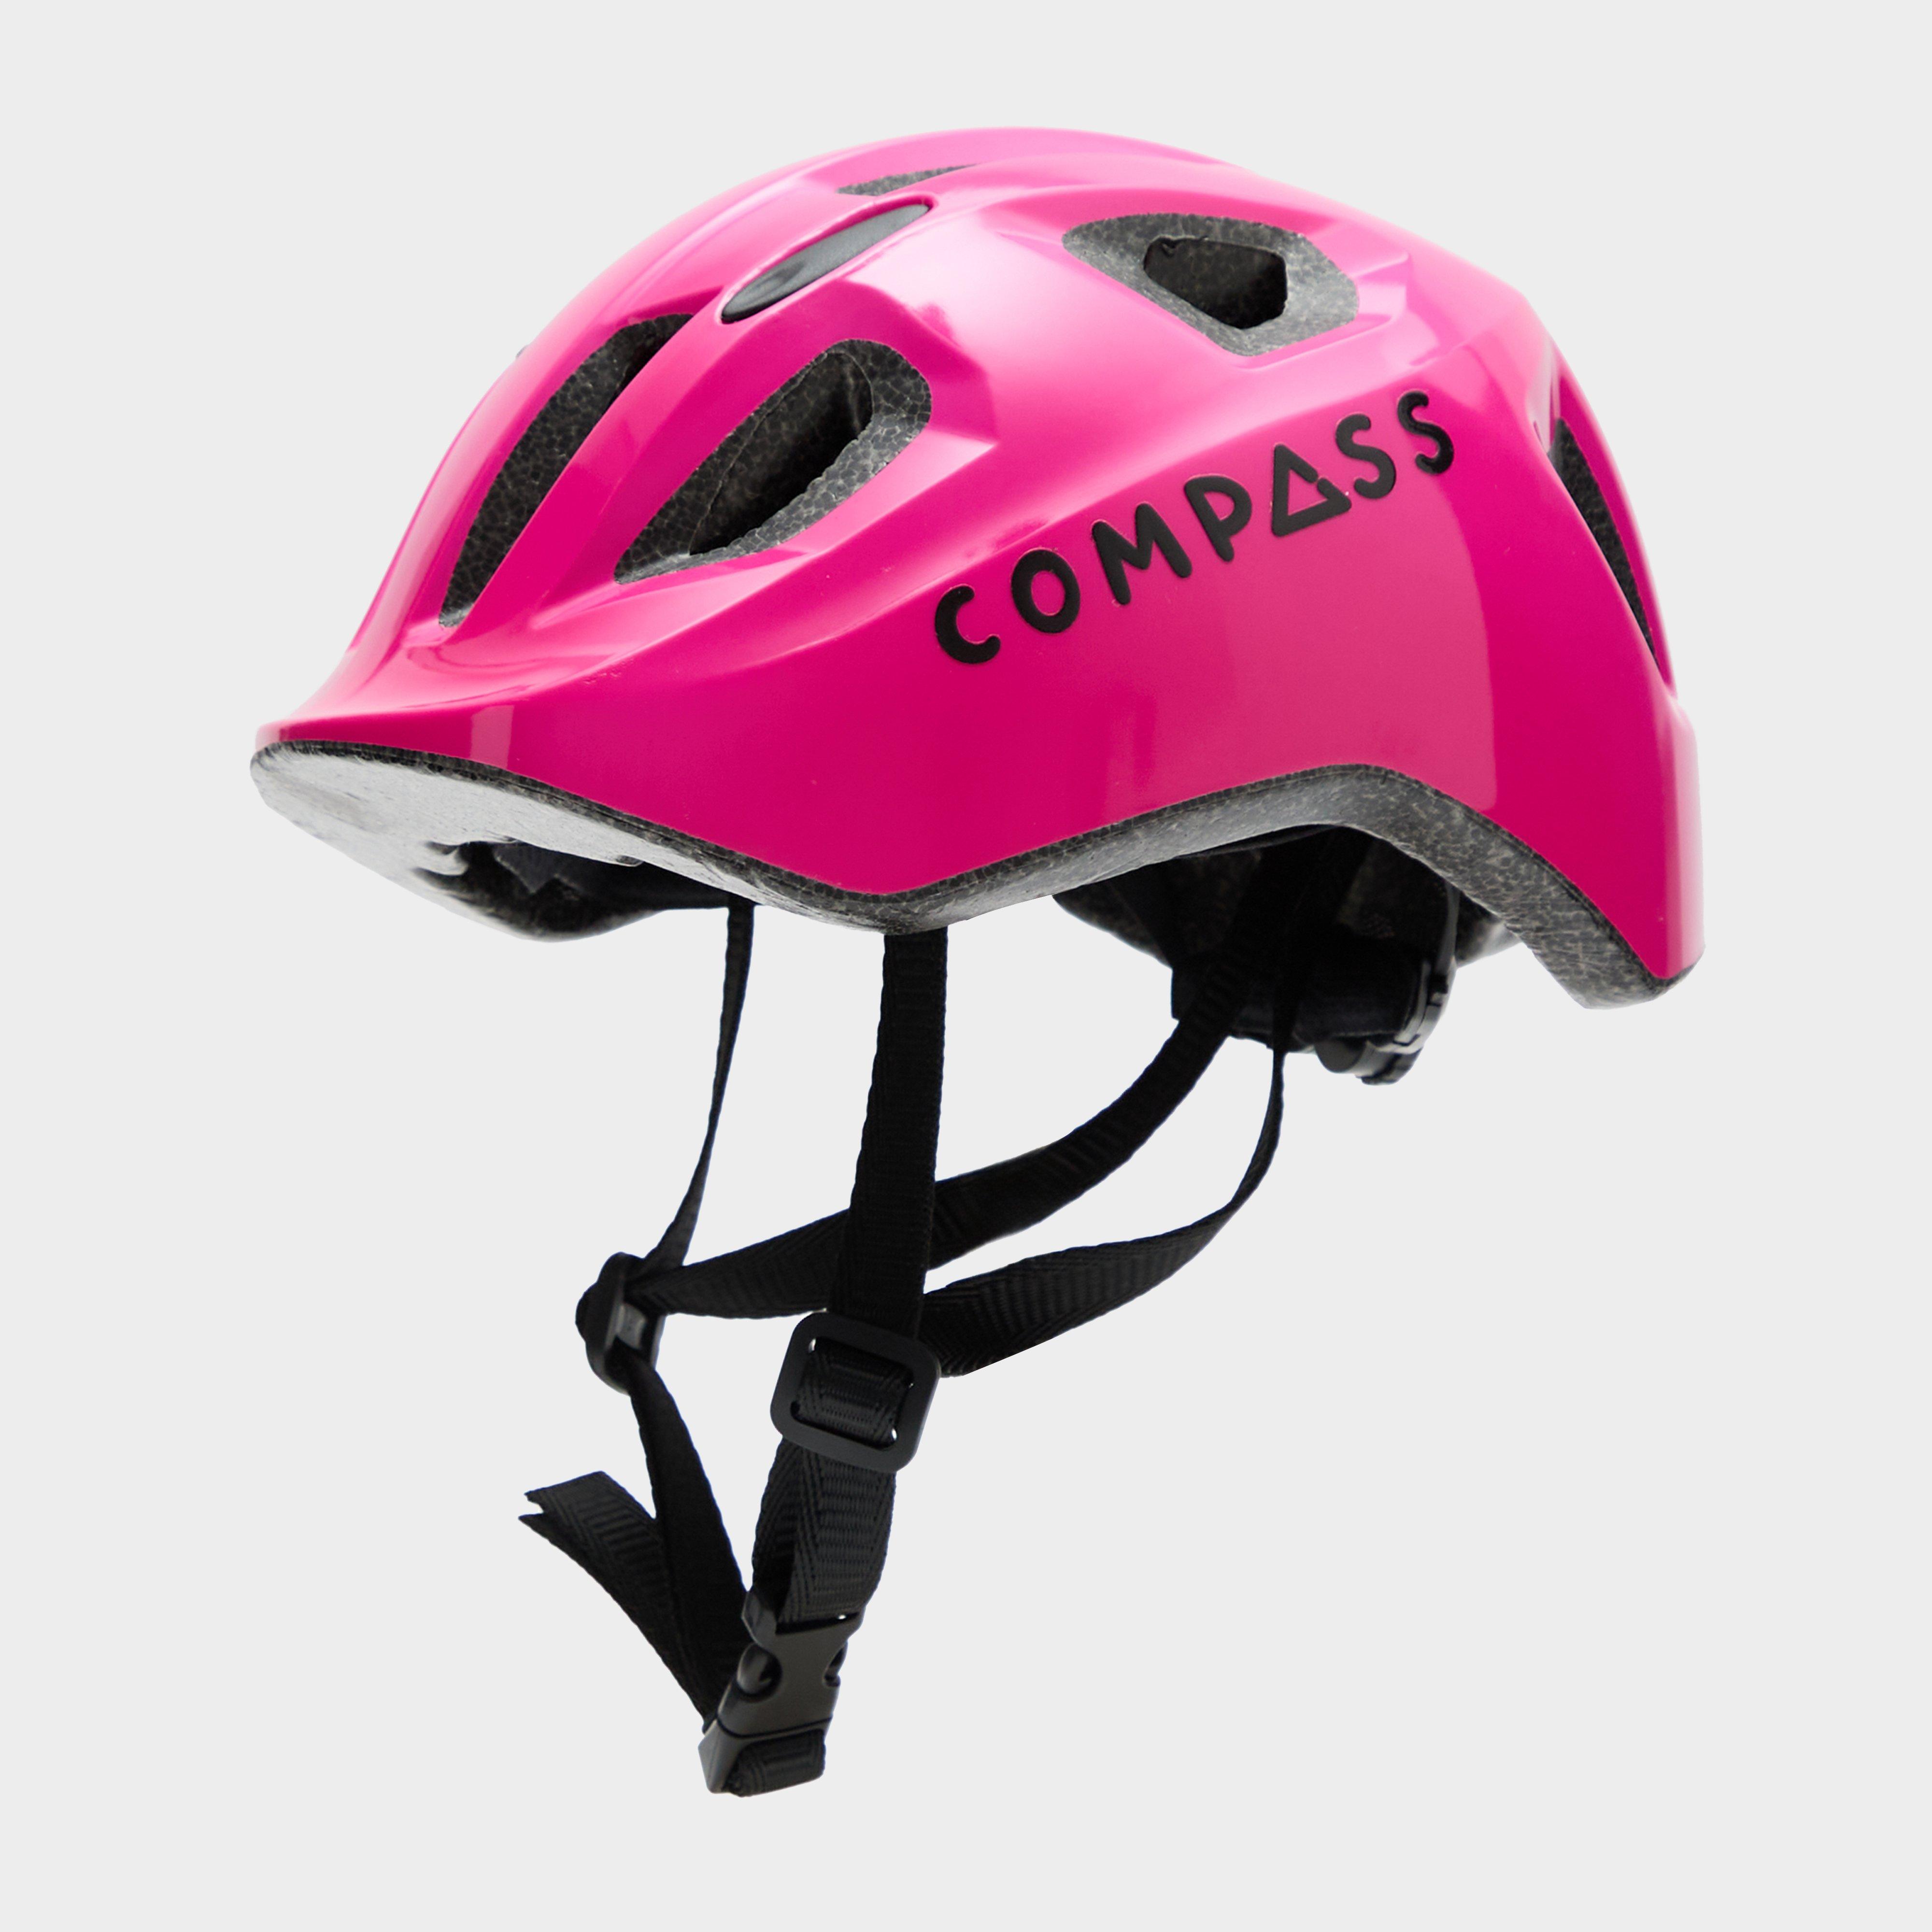 Blacks Compass Kids' CK2 Helmet